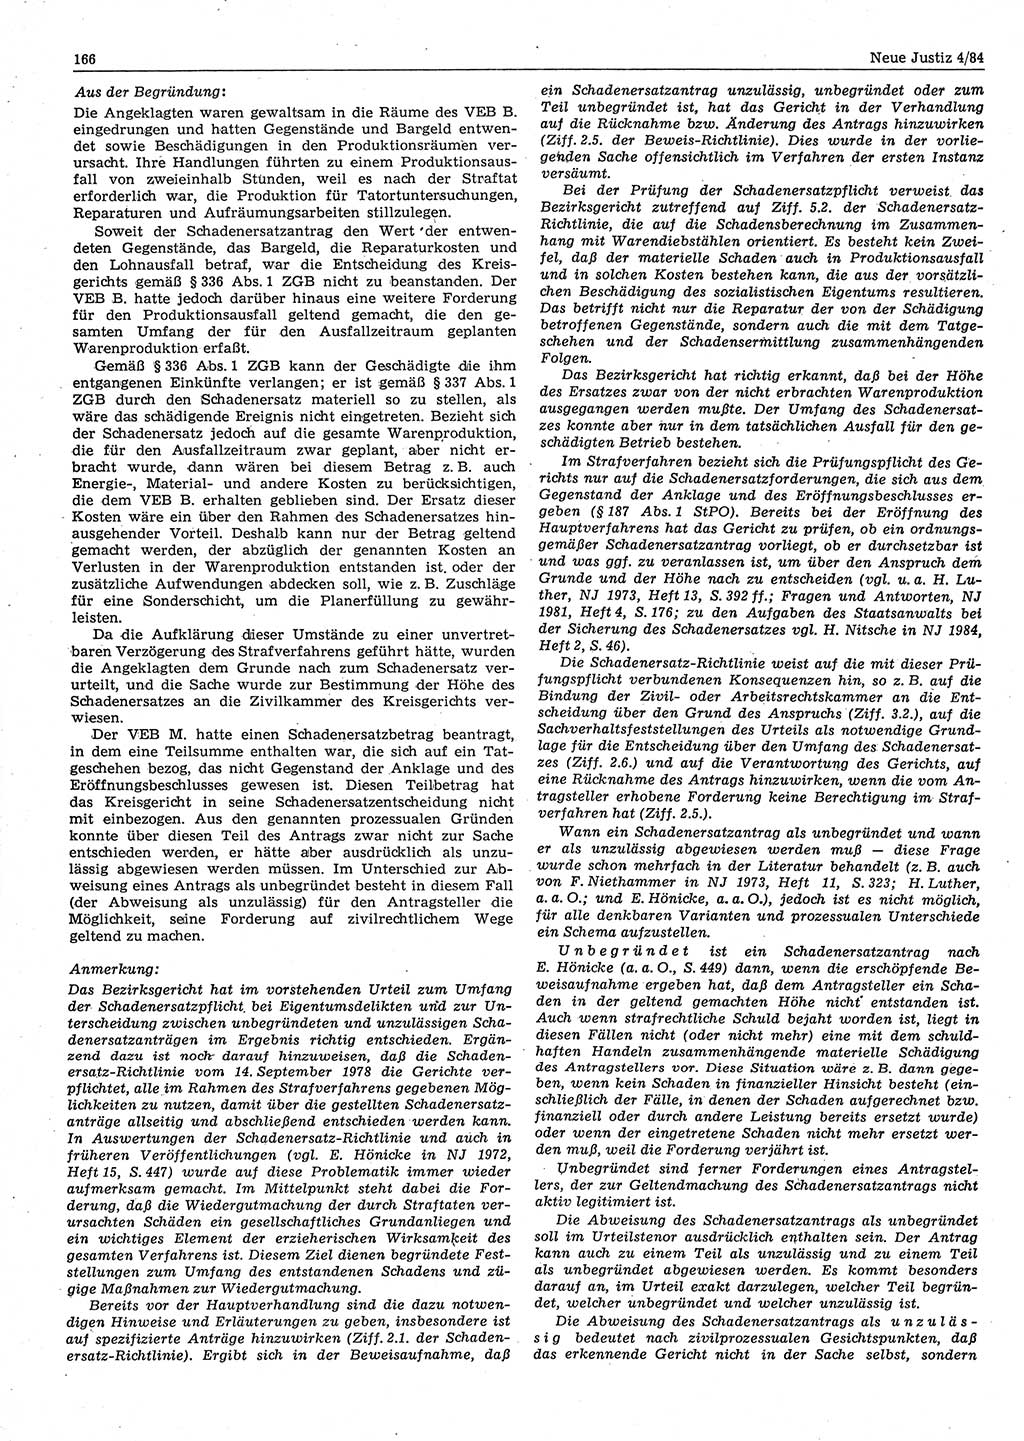 Neue Justiz (NJ), Zeitschrift für sozialistisches Recht und Gesetzlichkeit [Deutsche Demokratische Republik (DDR)], 38. Jahrgang 1984, Seite 166 (NJ DDR 1984, S. 166)